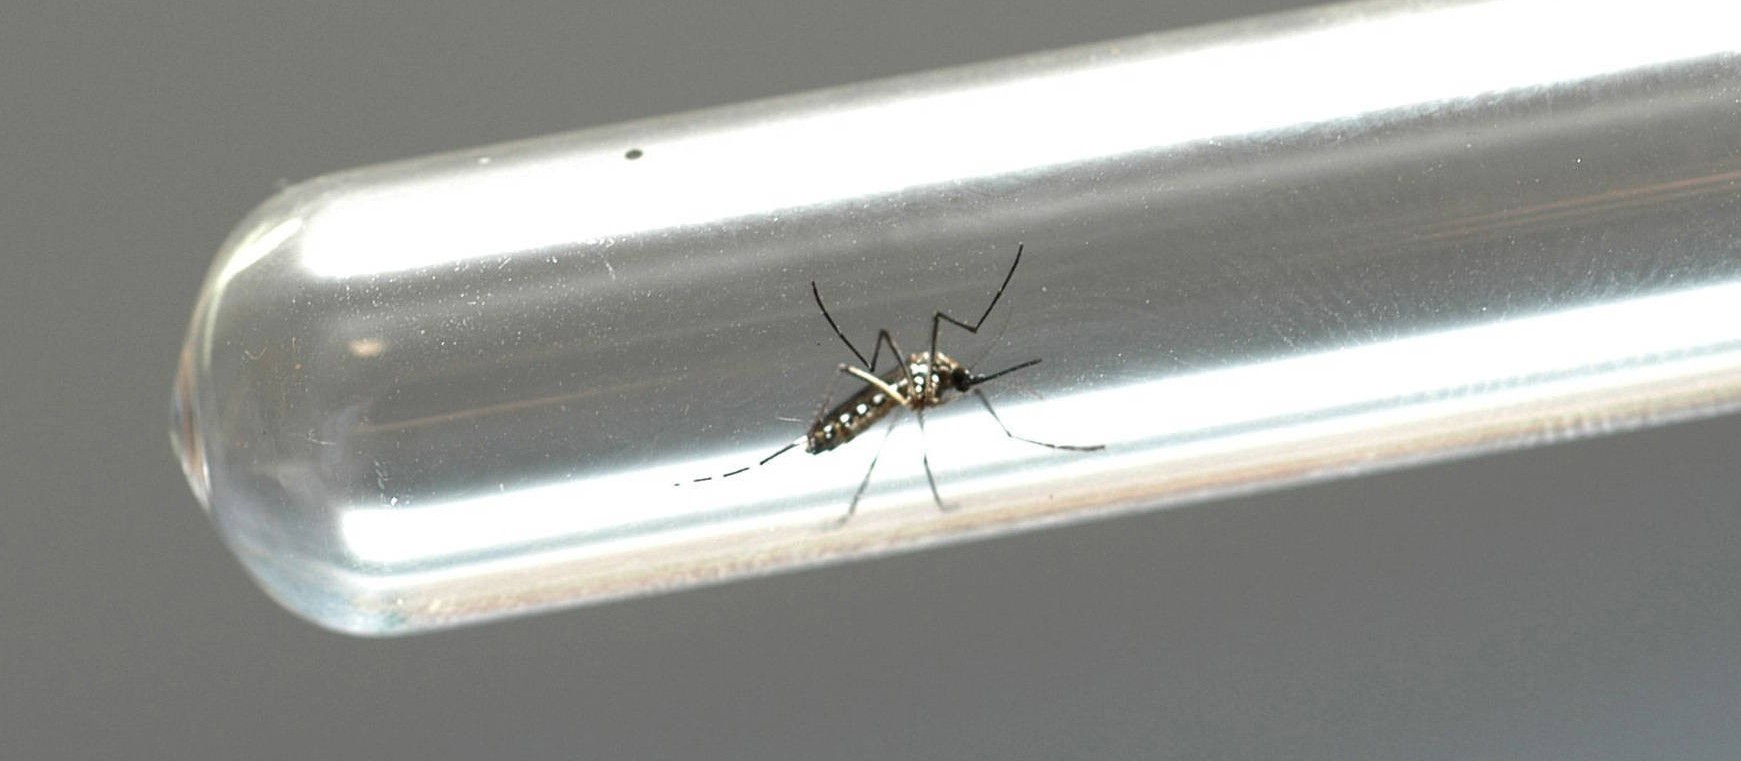 Maringá está em estado de epidemia de dengue, aponta boletim